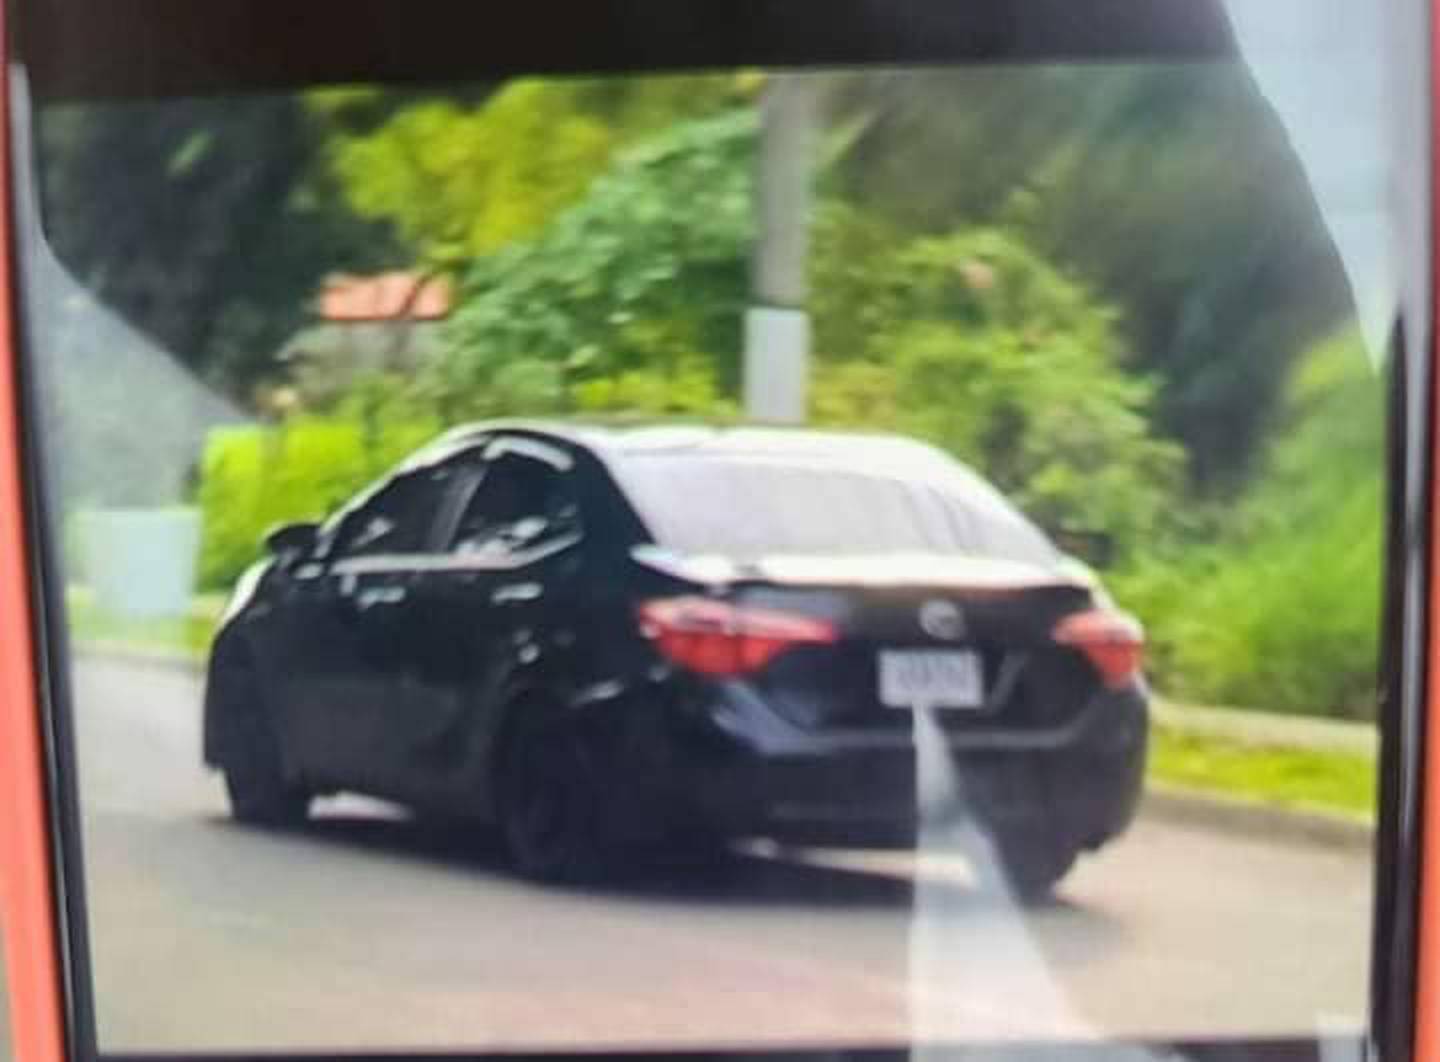 El Toyota negro usado por los captores era buscado desde el martes, cuando ingresó la alerta al sistema 9-1-1. Foto: Cortesía.